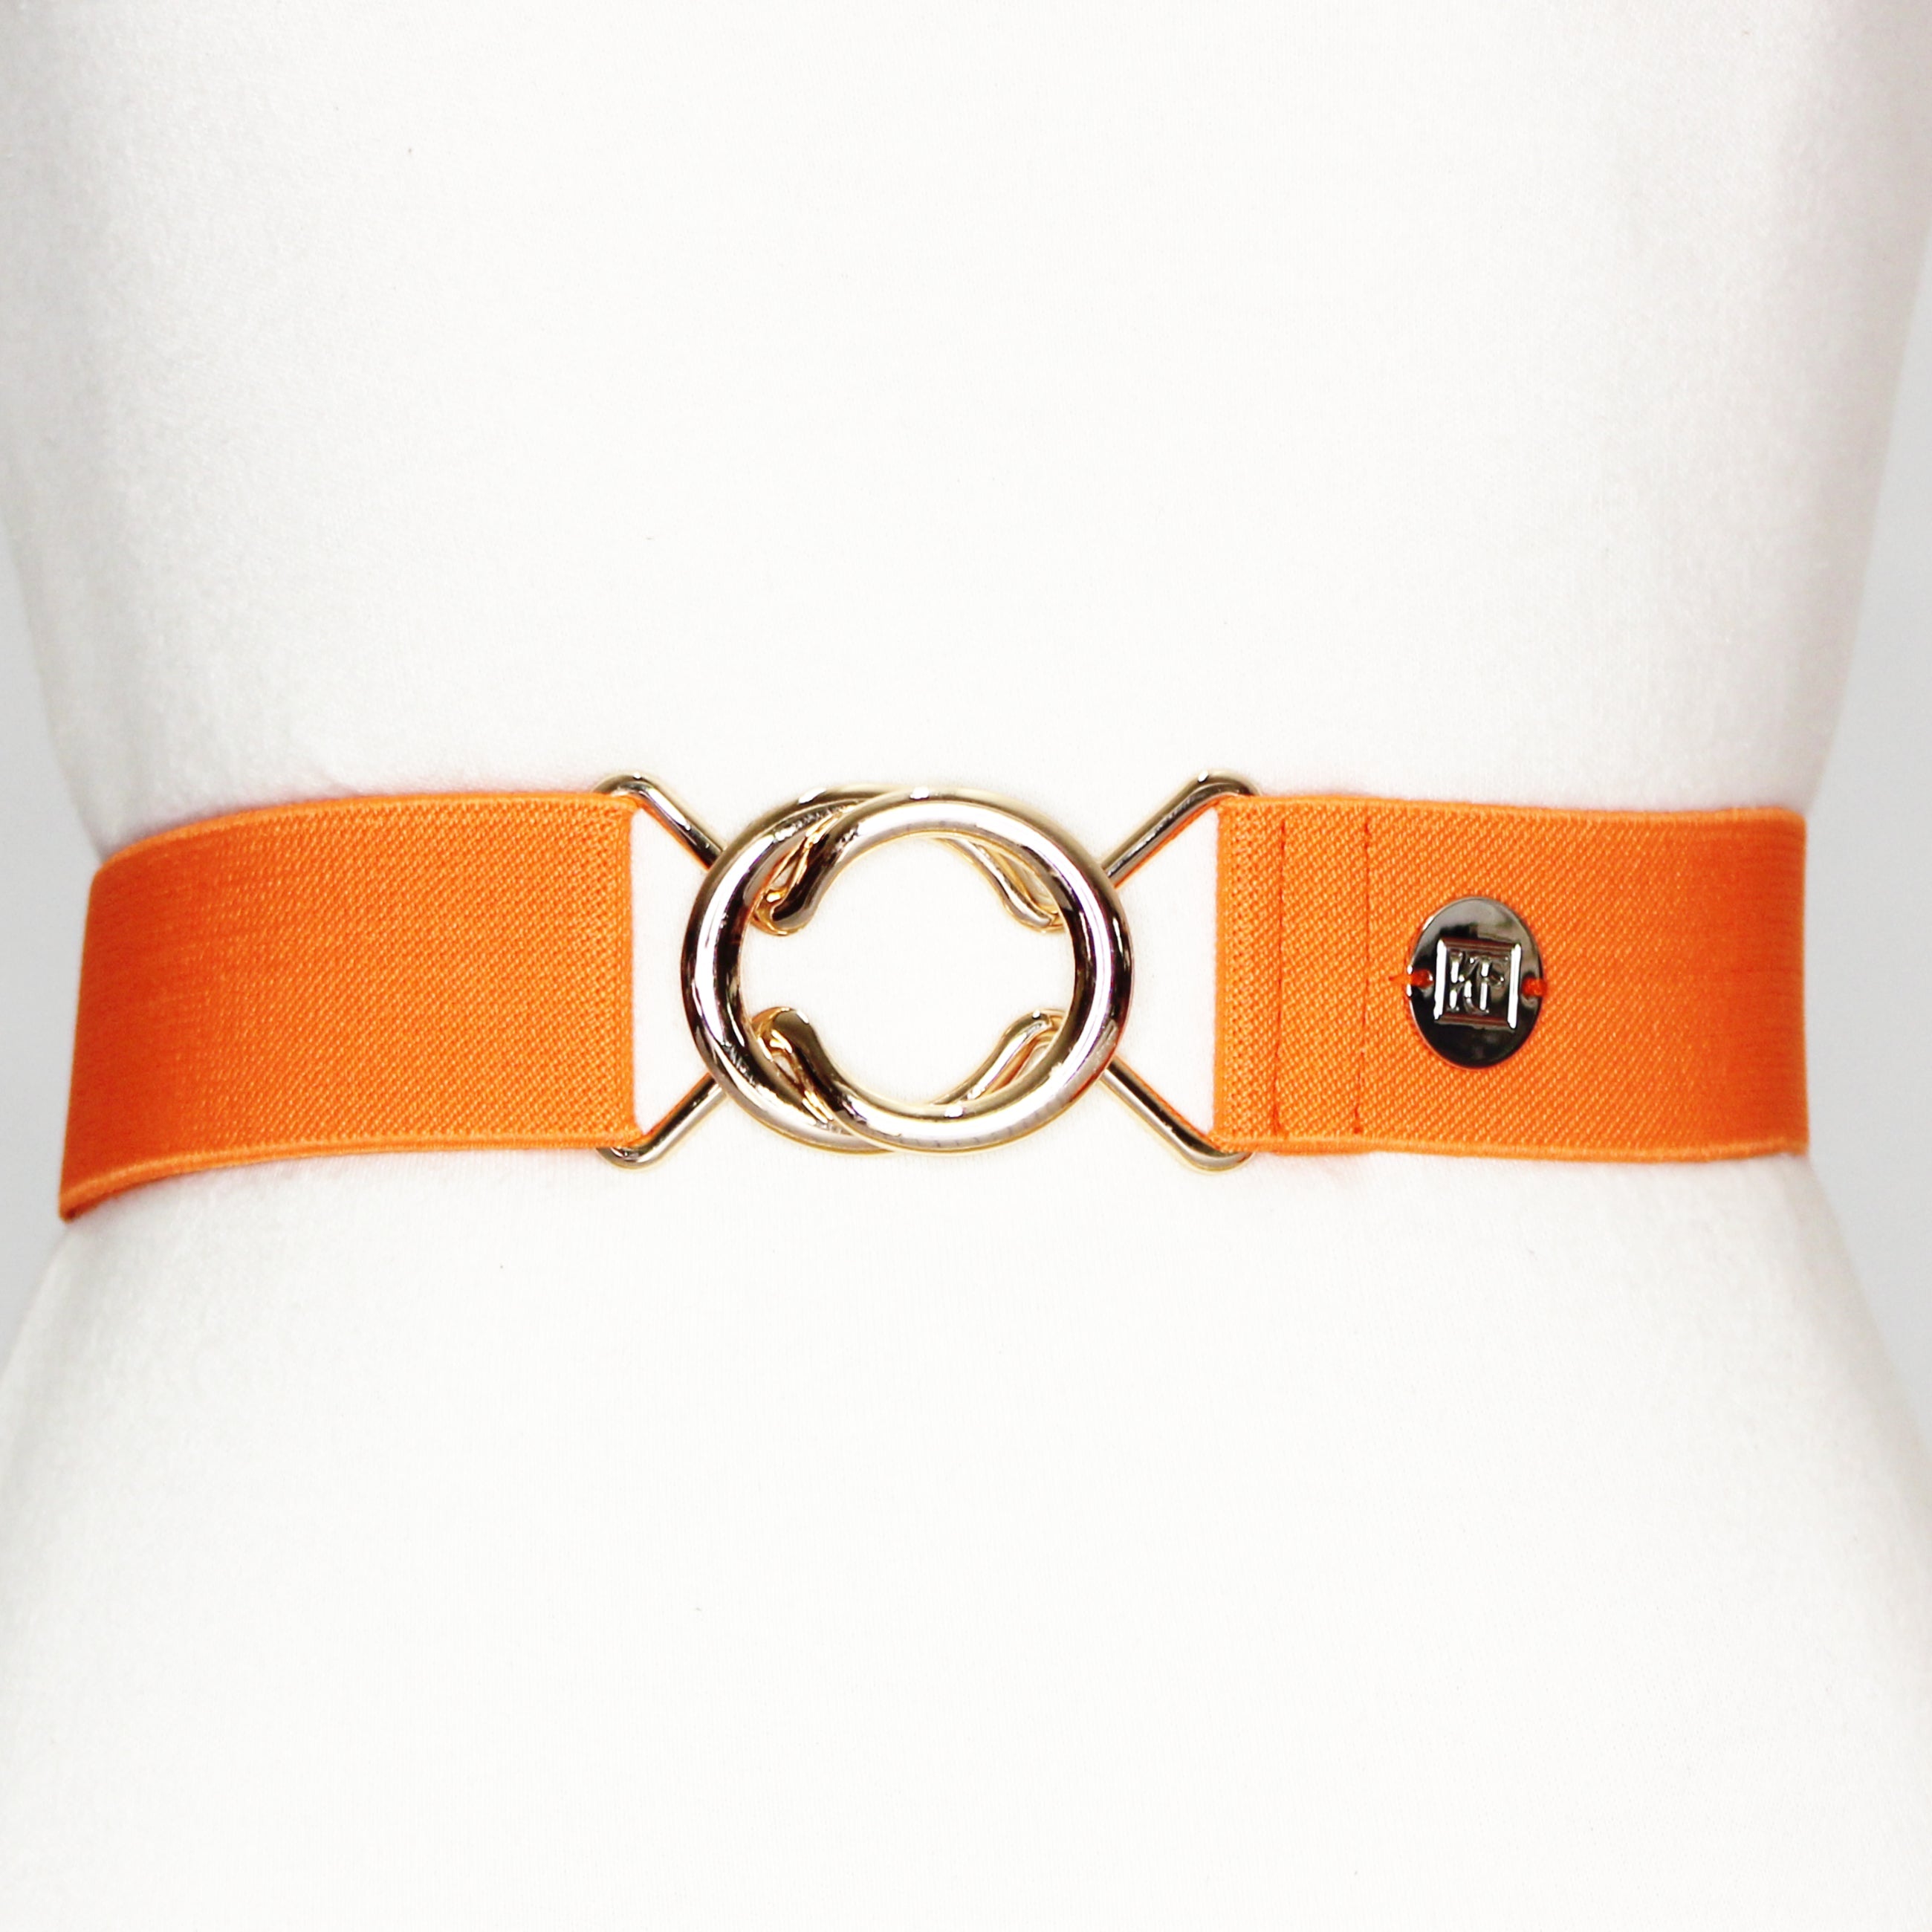 Orange elastic belt with 1.5" gold interlocking buckle by KF Clothing